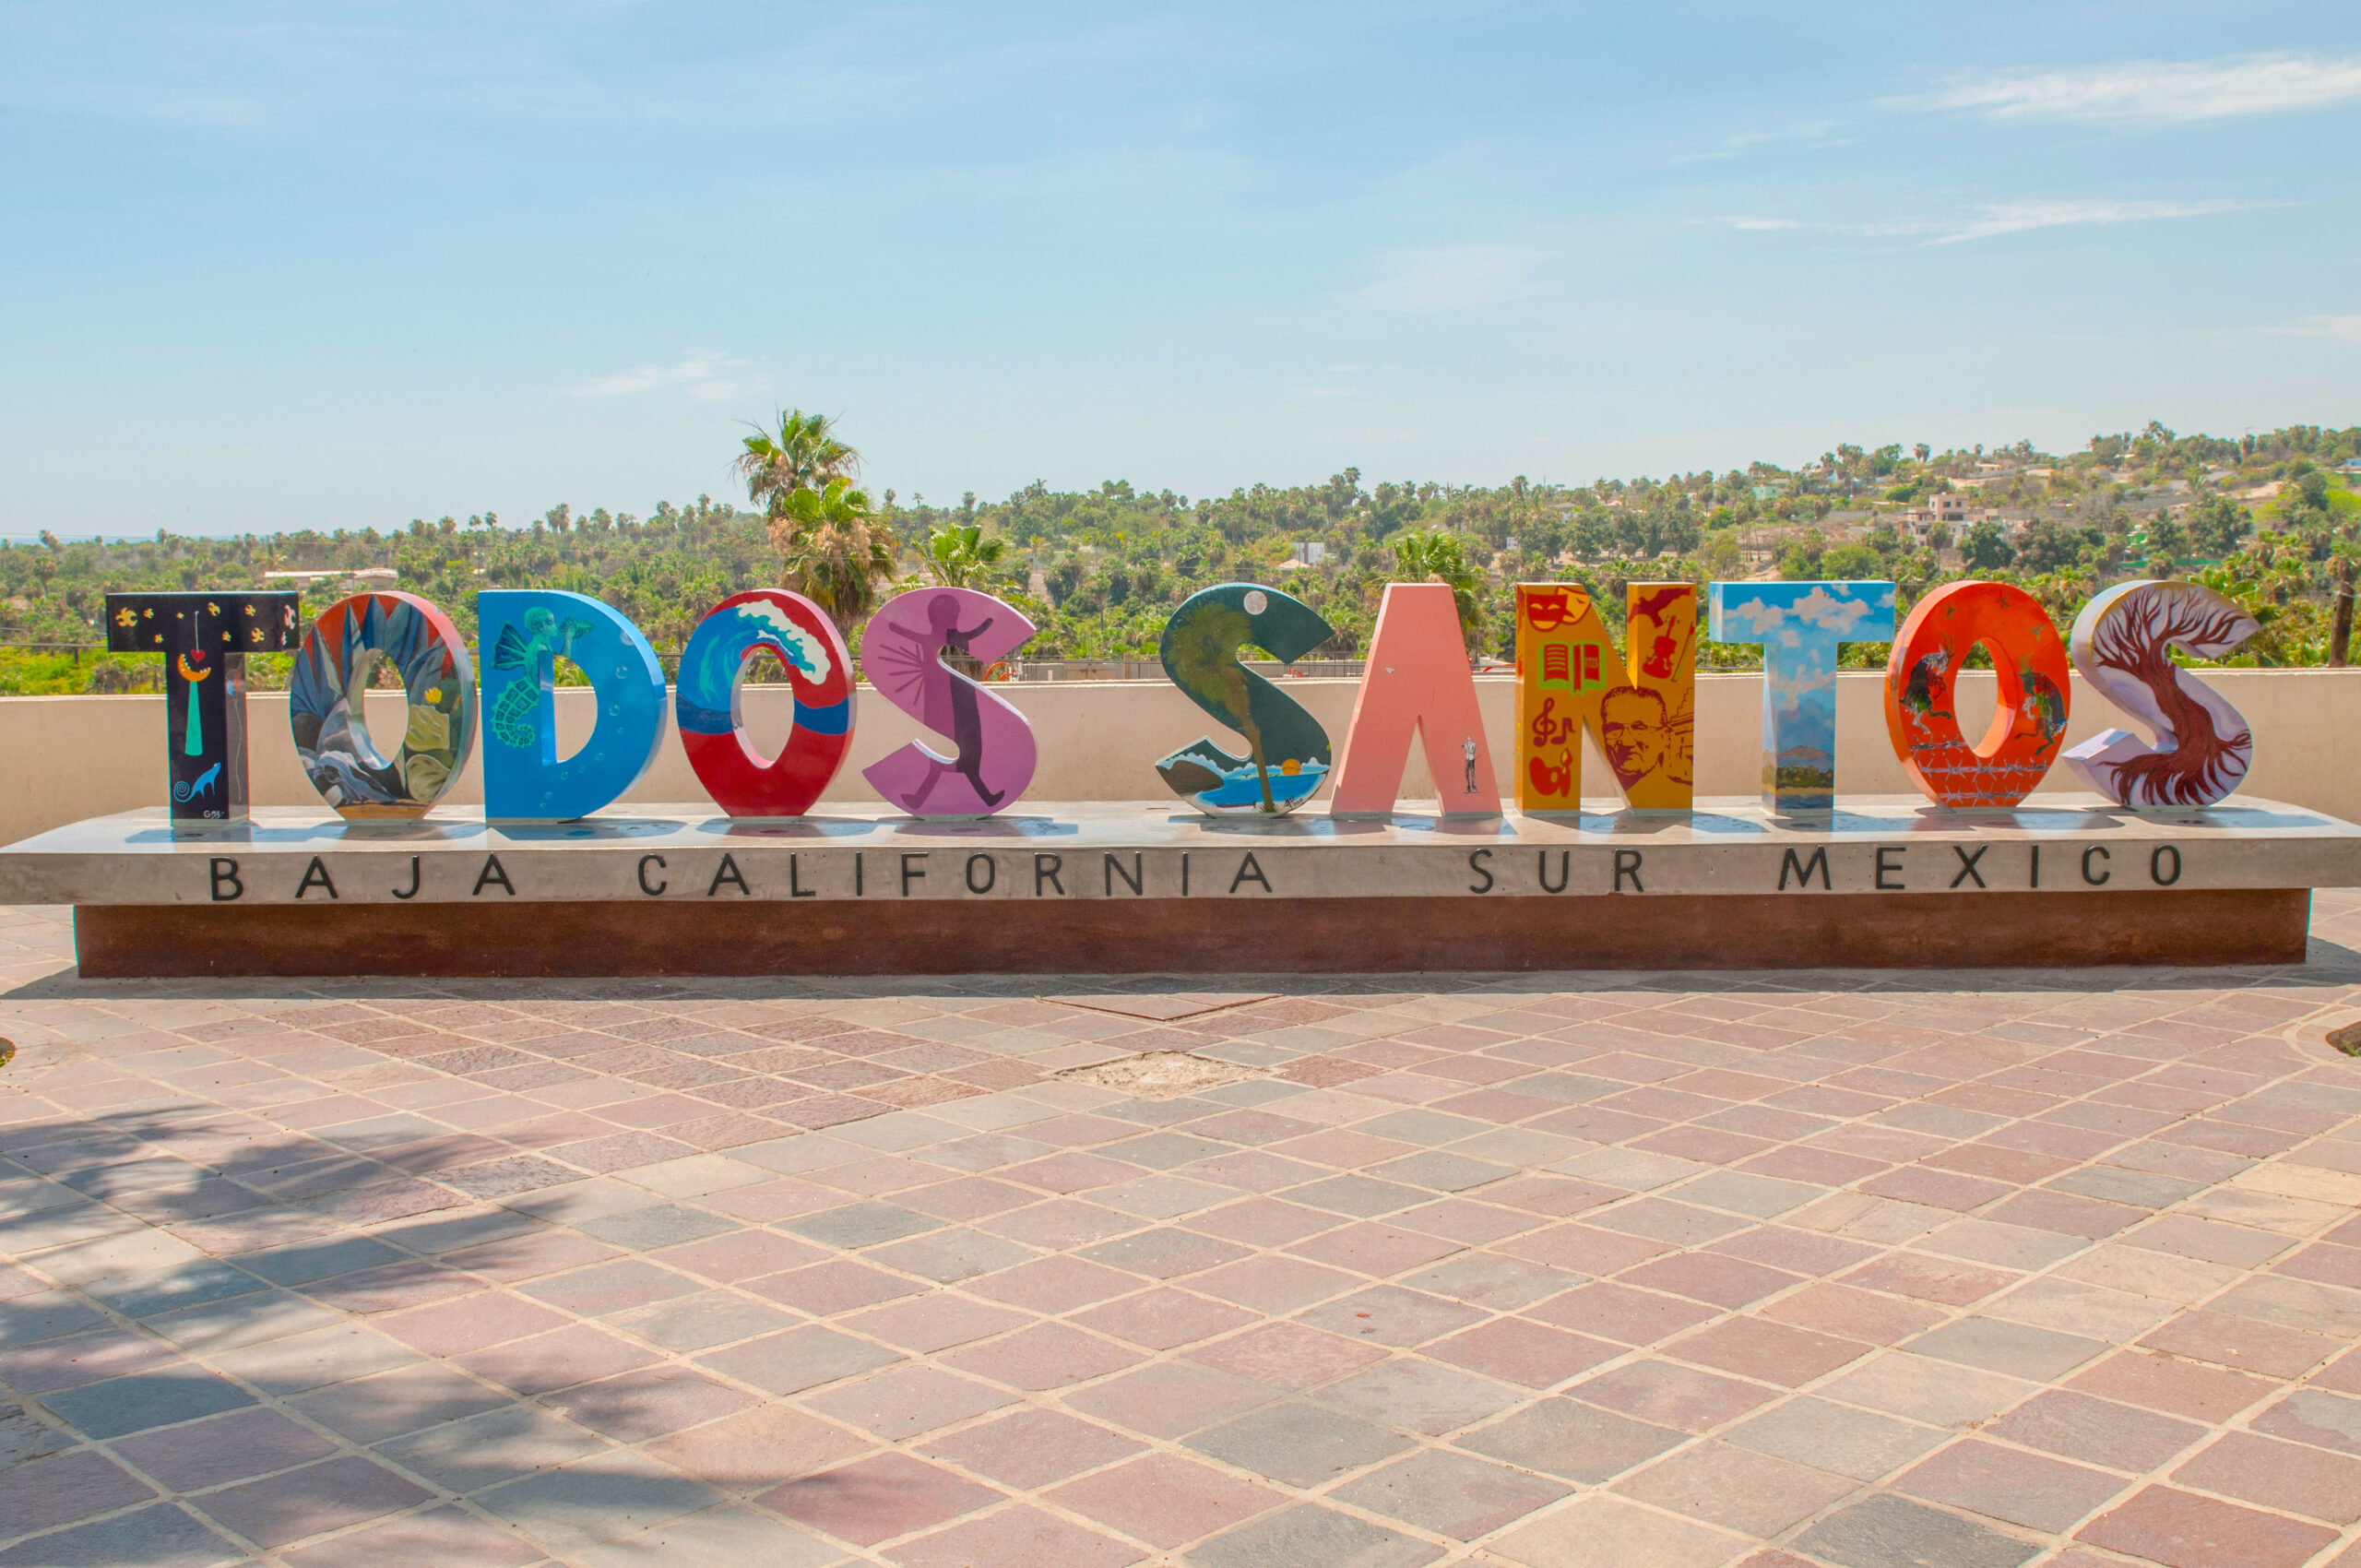 Todos Santos, Mexico (Photo Credit: VG Foto / Shutterstock)